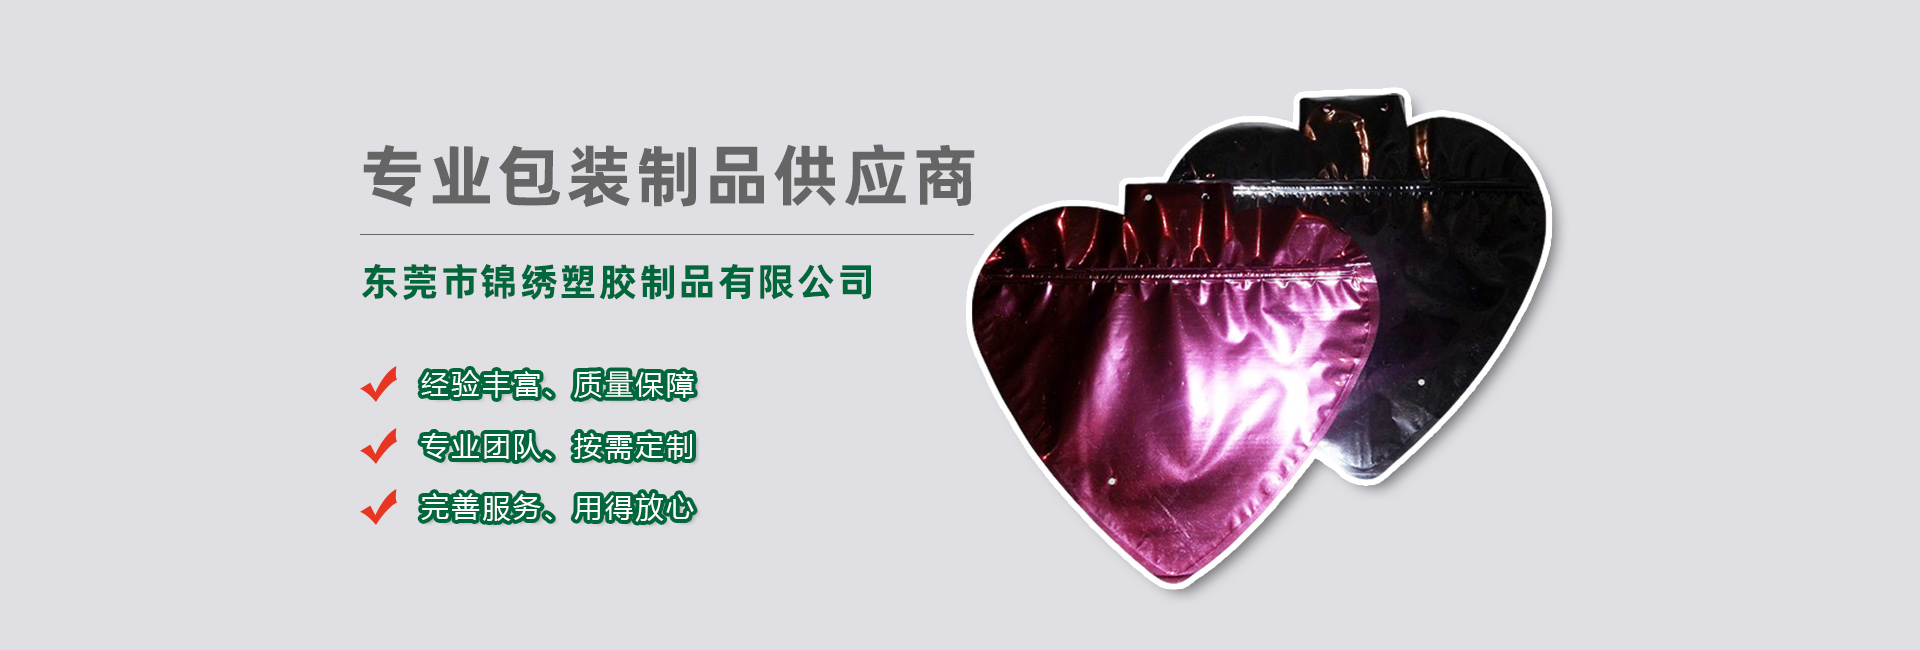 大港食品袋banner